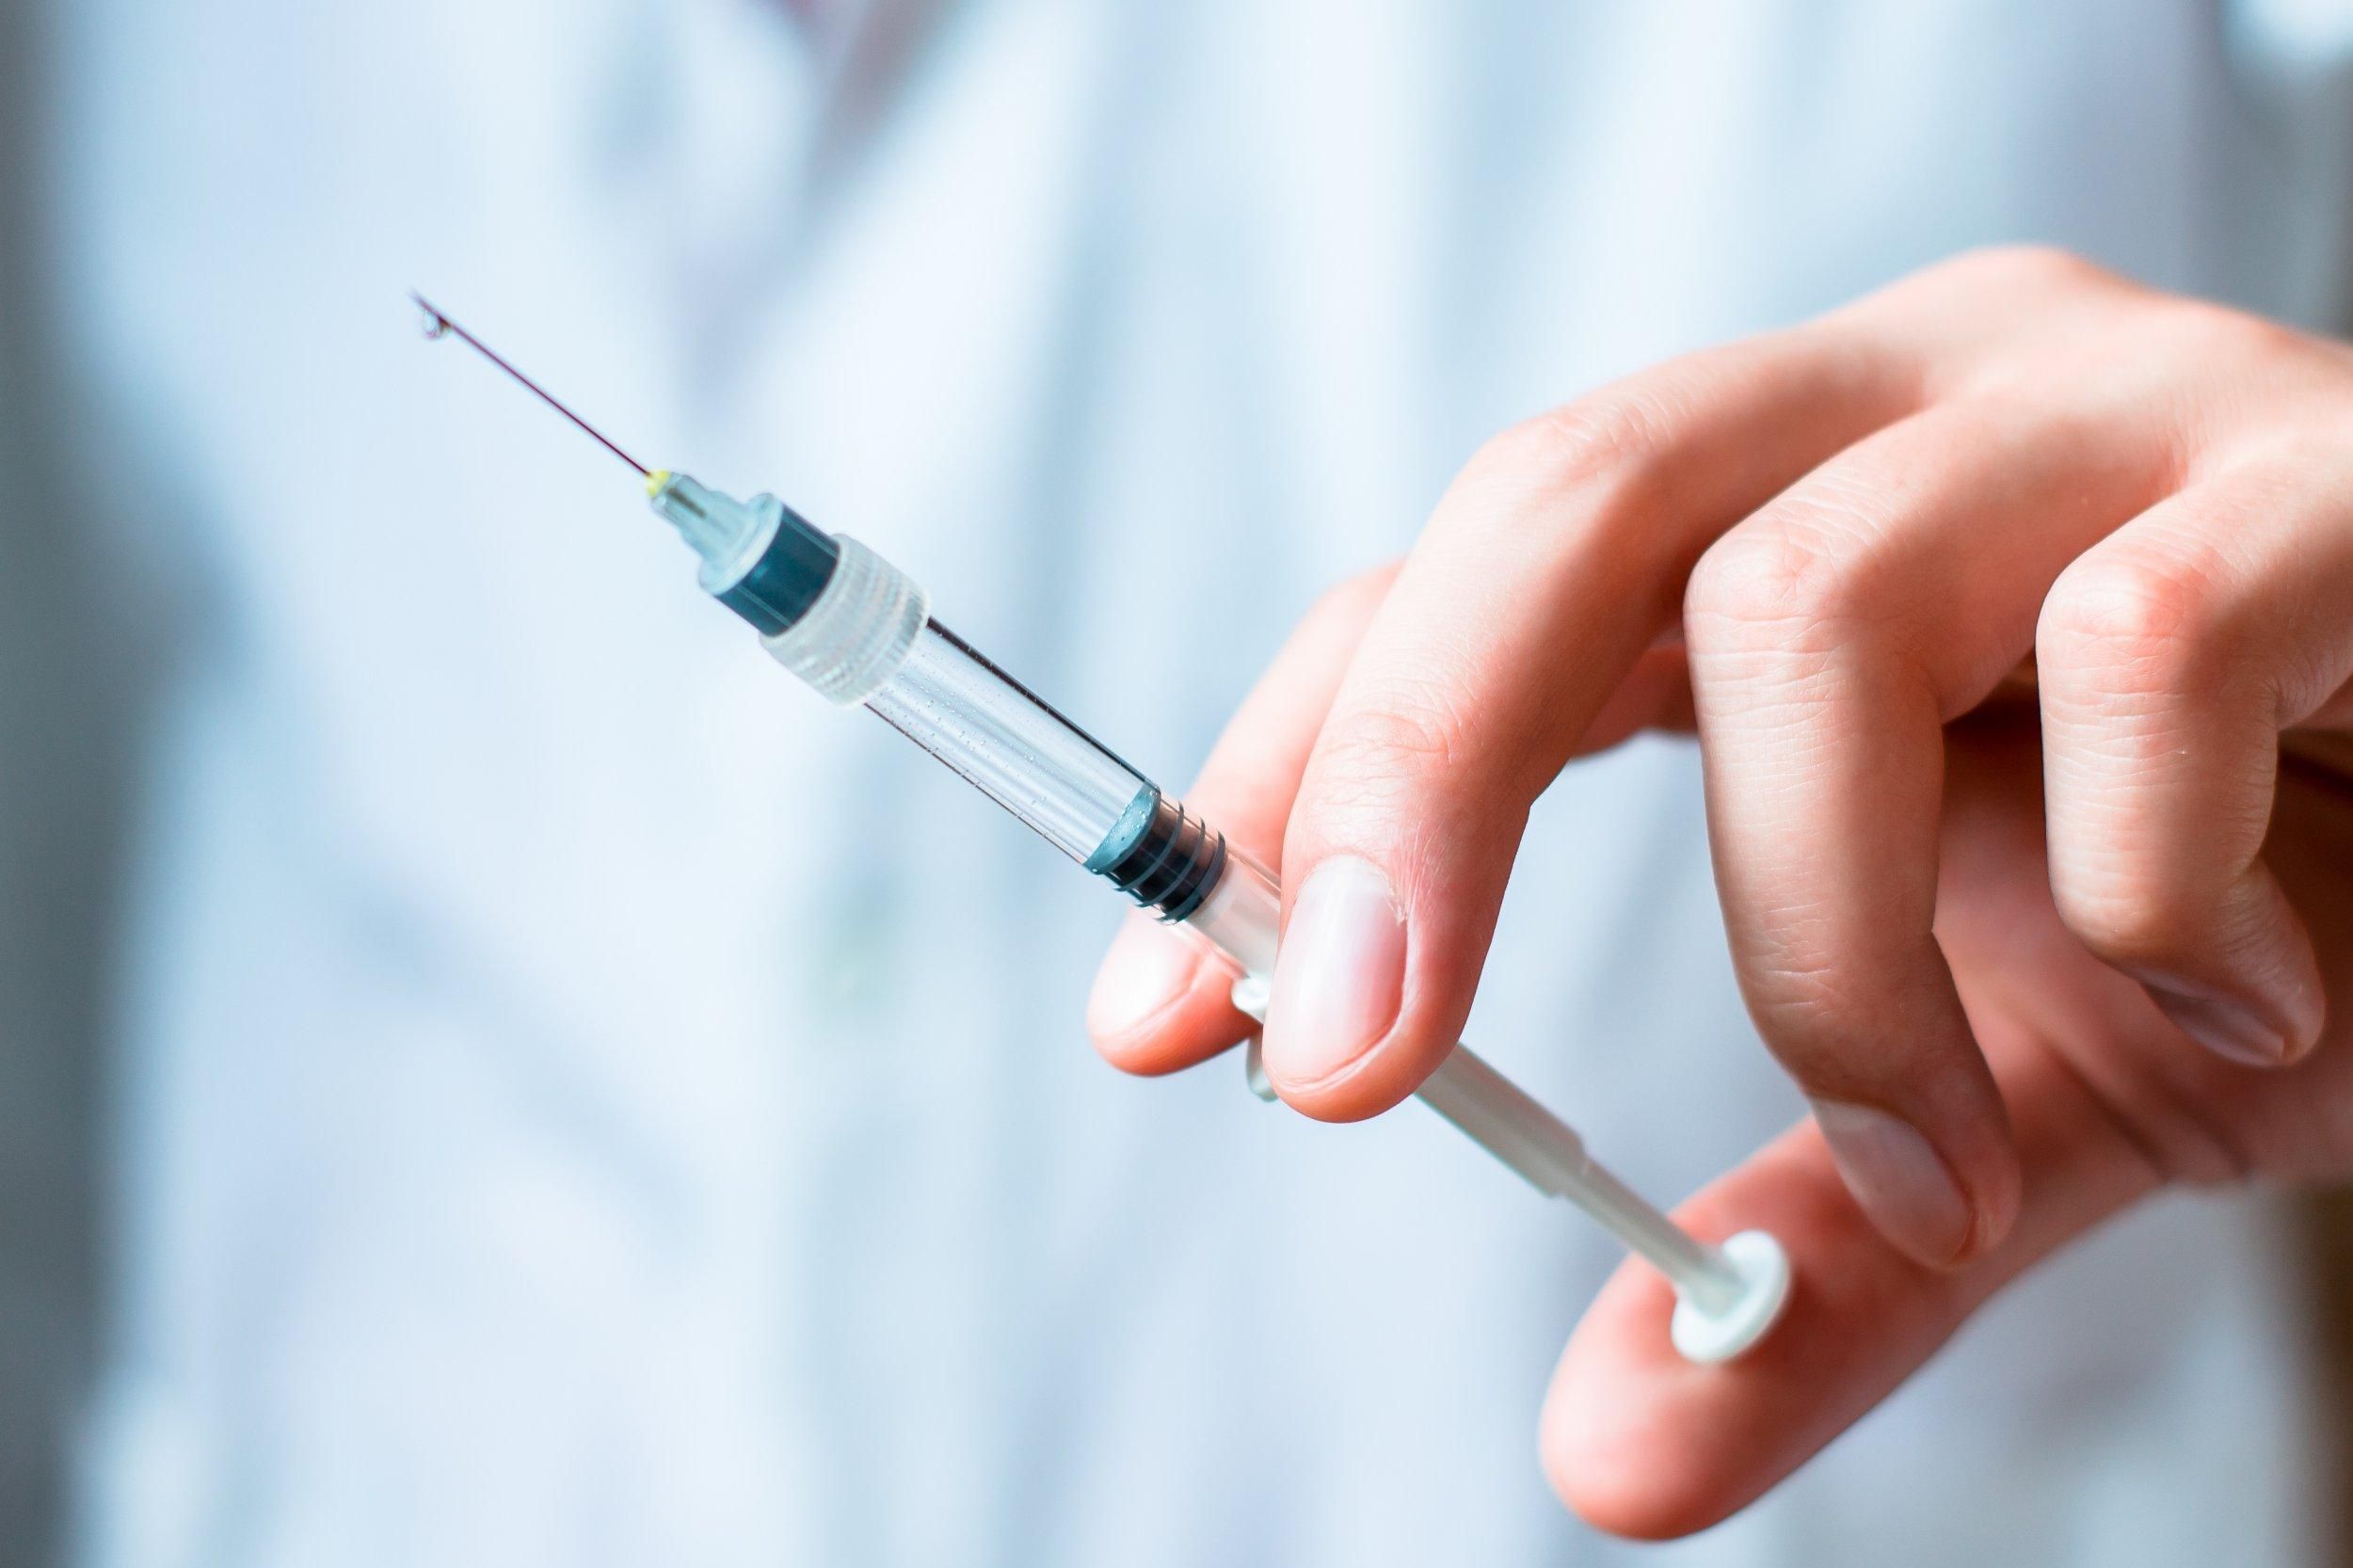 Стратегия на самоуничтожение: в ВОЗ возмущены распределением вакцин против COVID-19